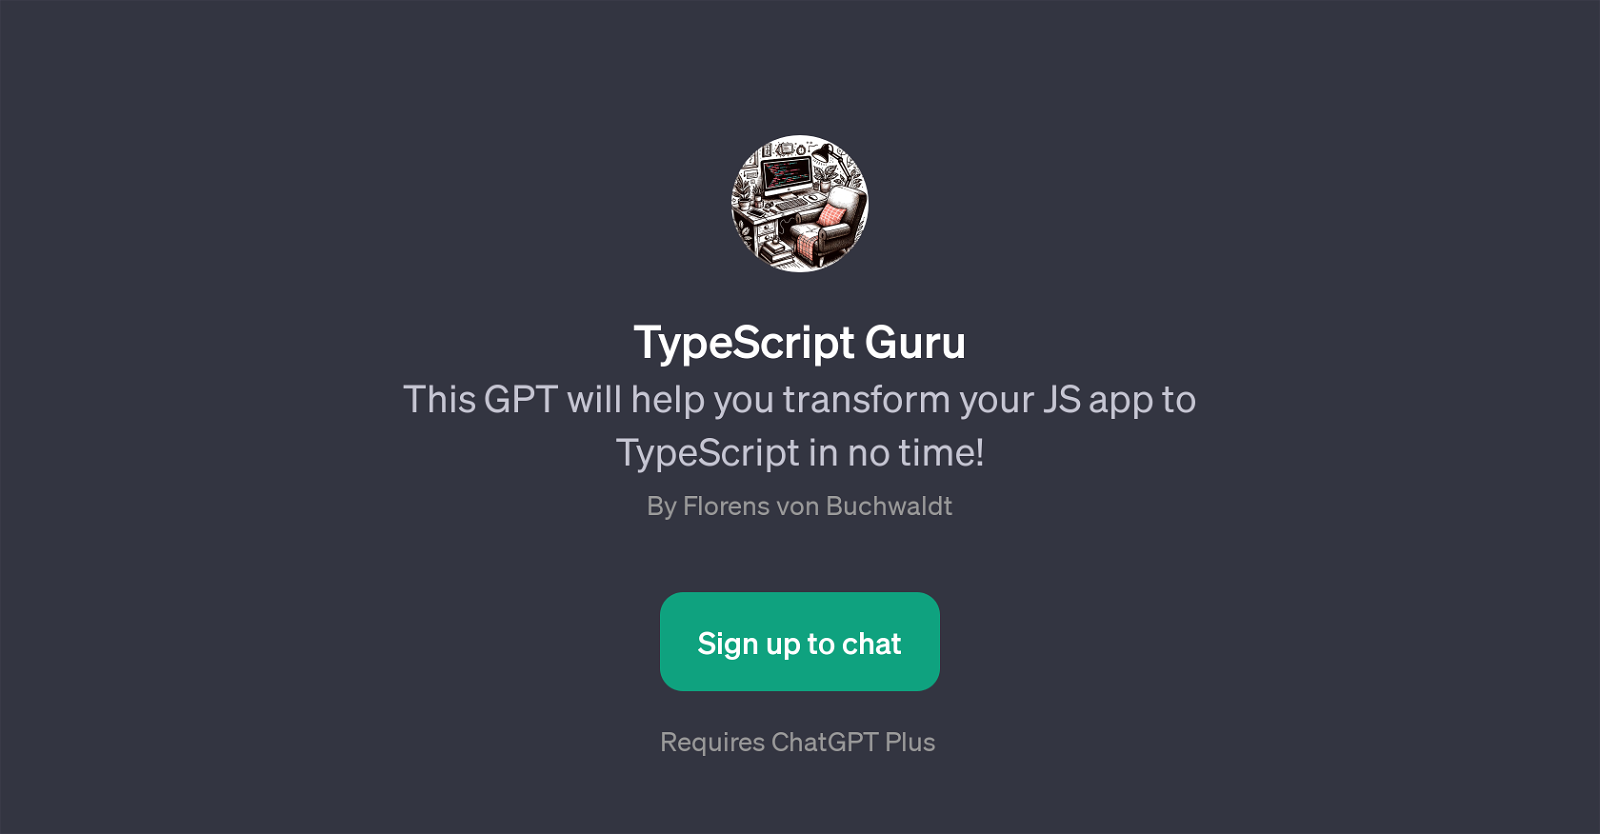 TypeScript Guru website